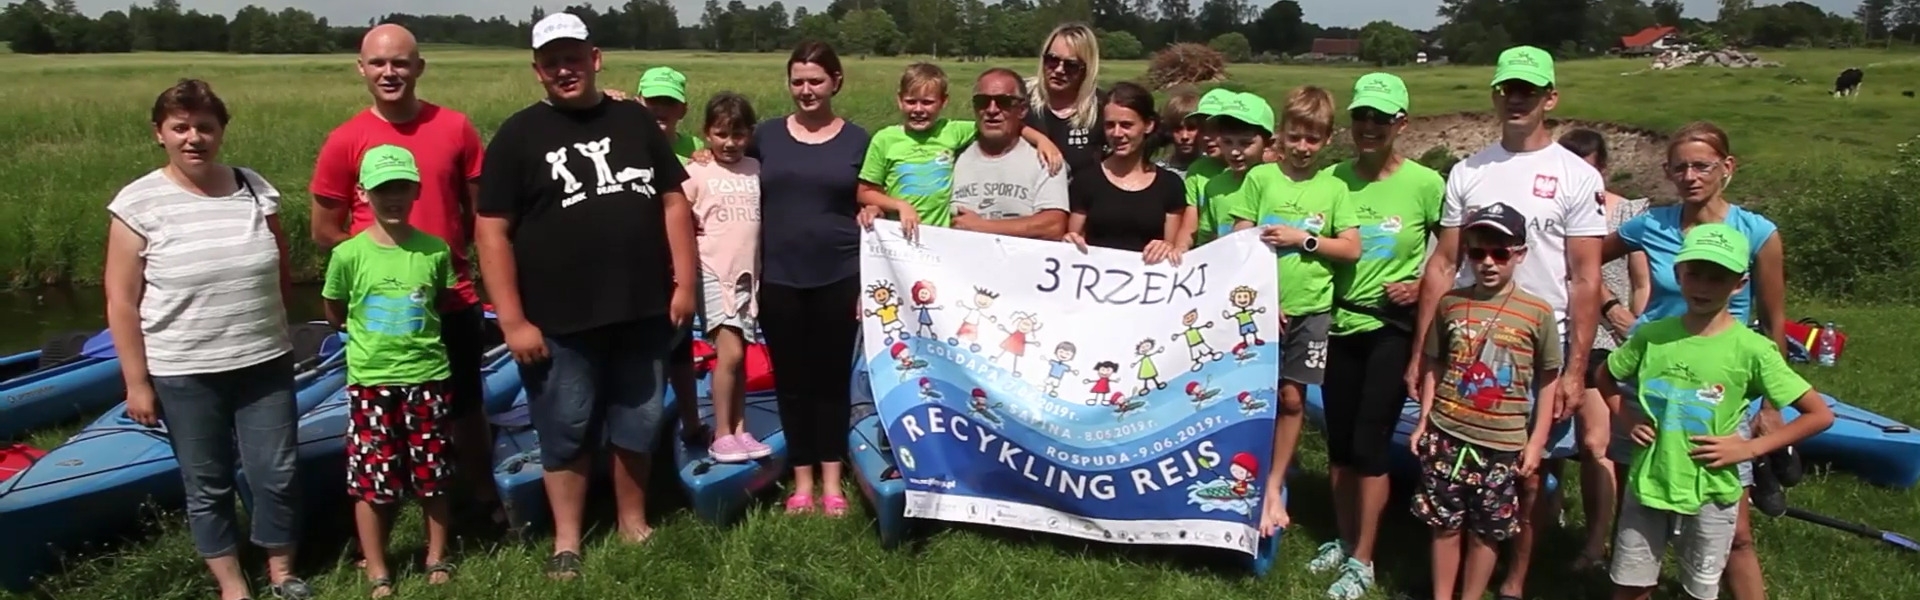 Recykling Rejs 2019 - 3 rzeki